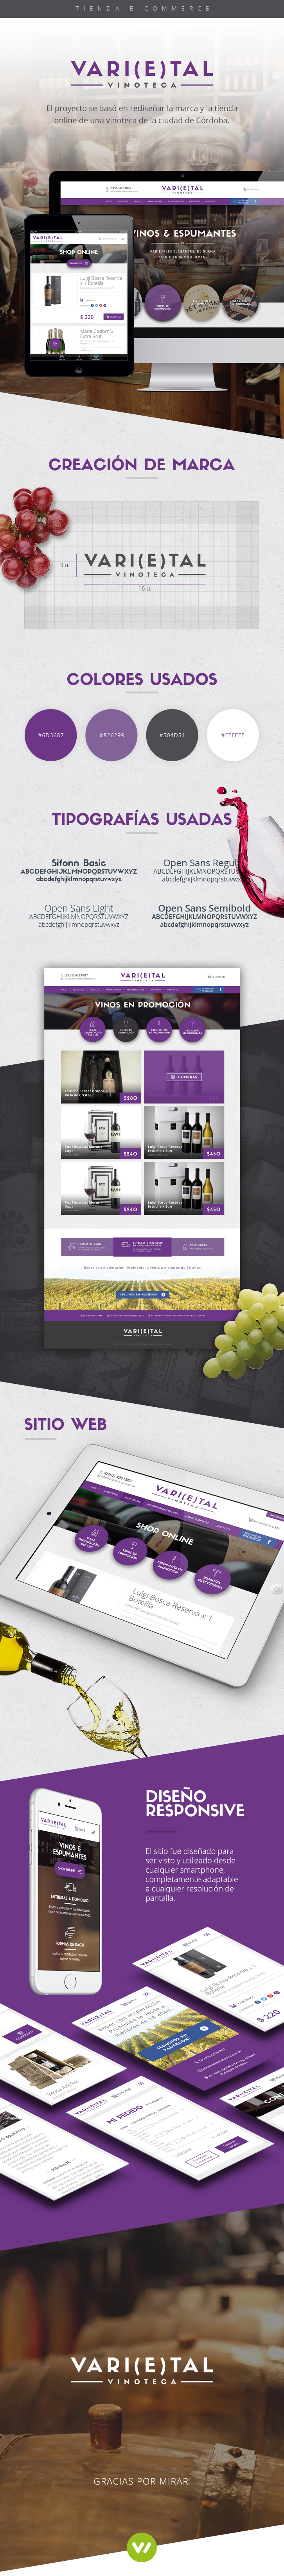 pagina venta online de vinos